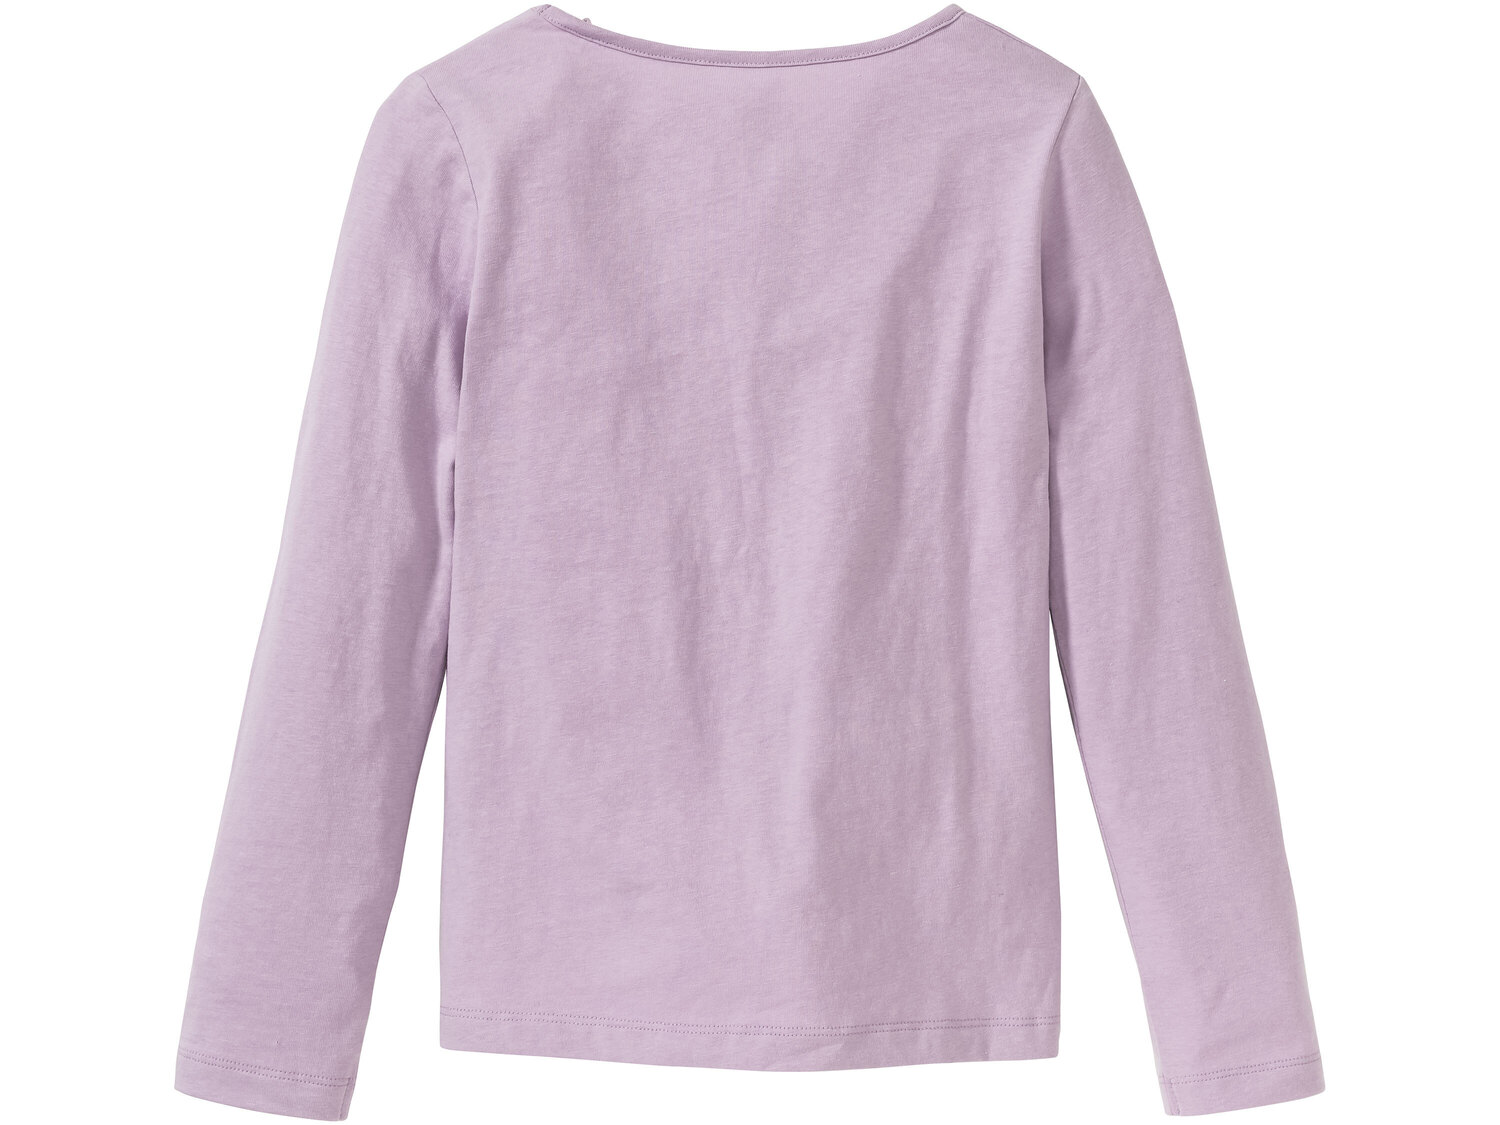 Piżama dziewczęca , cena 24,99 PLN 
- rozmiary: 122-152
- koszulka 100% bawełny
- ...